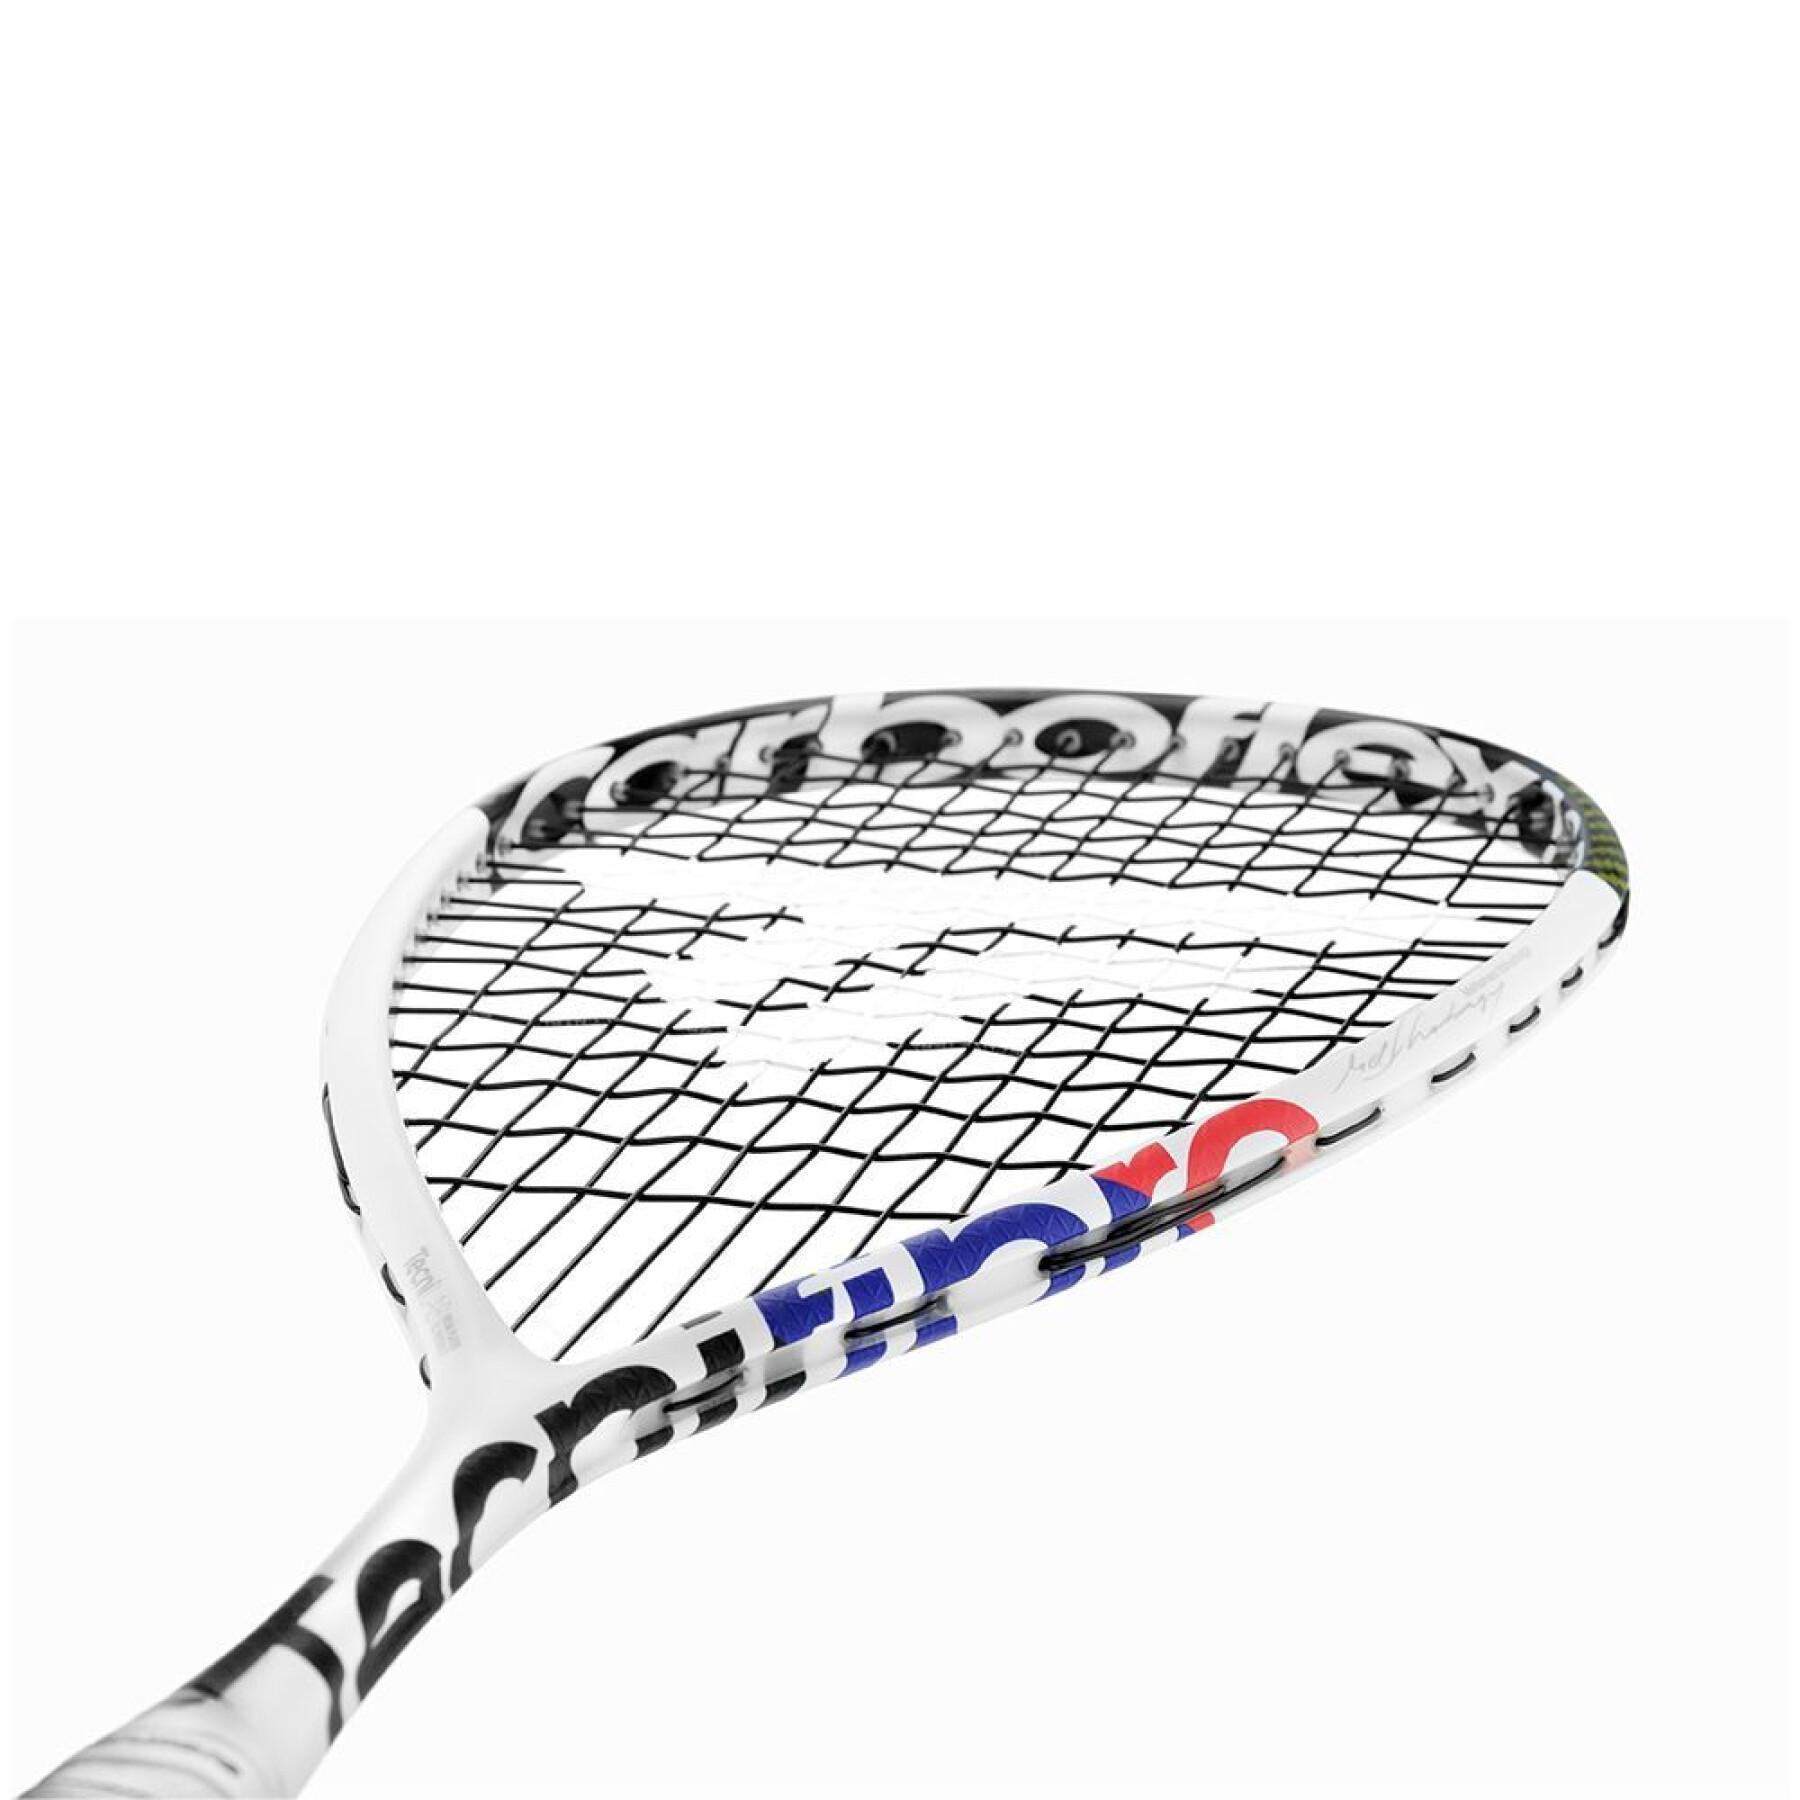 Squash racket Tecnifibre Carboflex 125 X-TOP